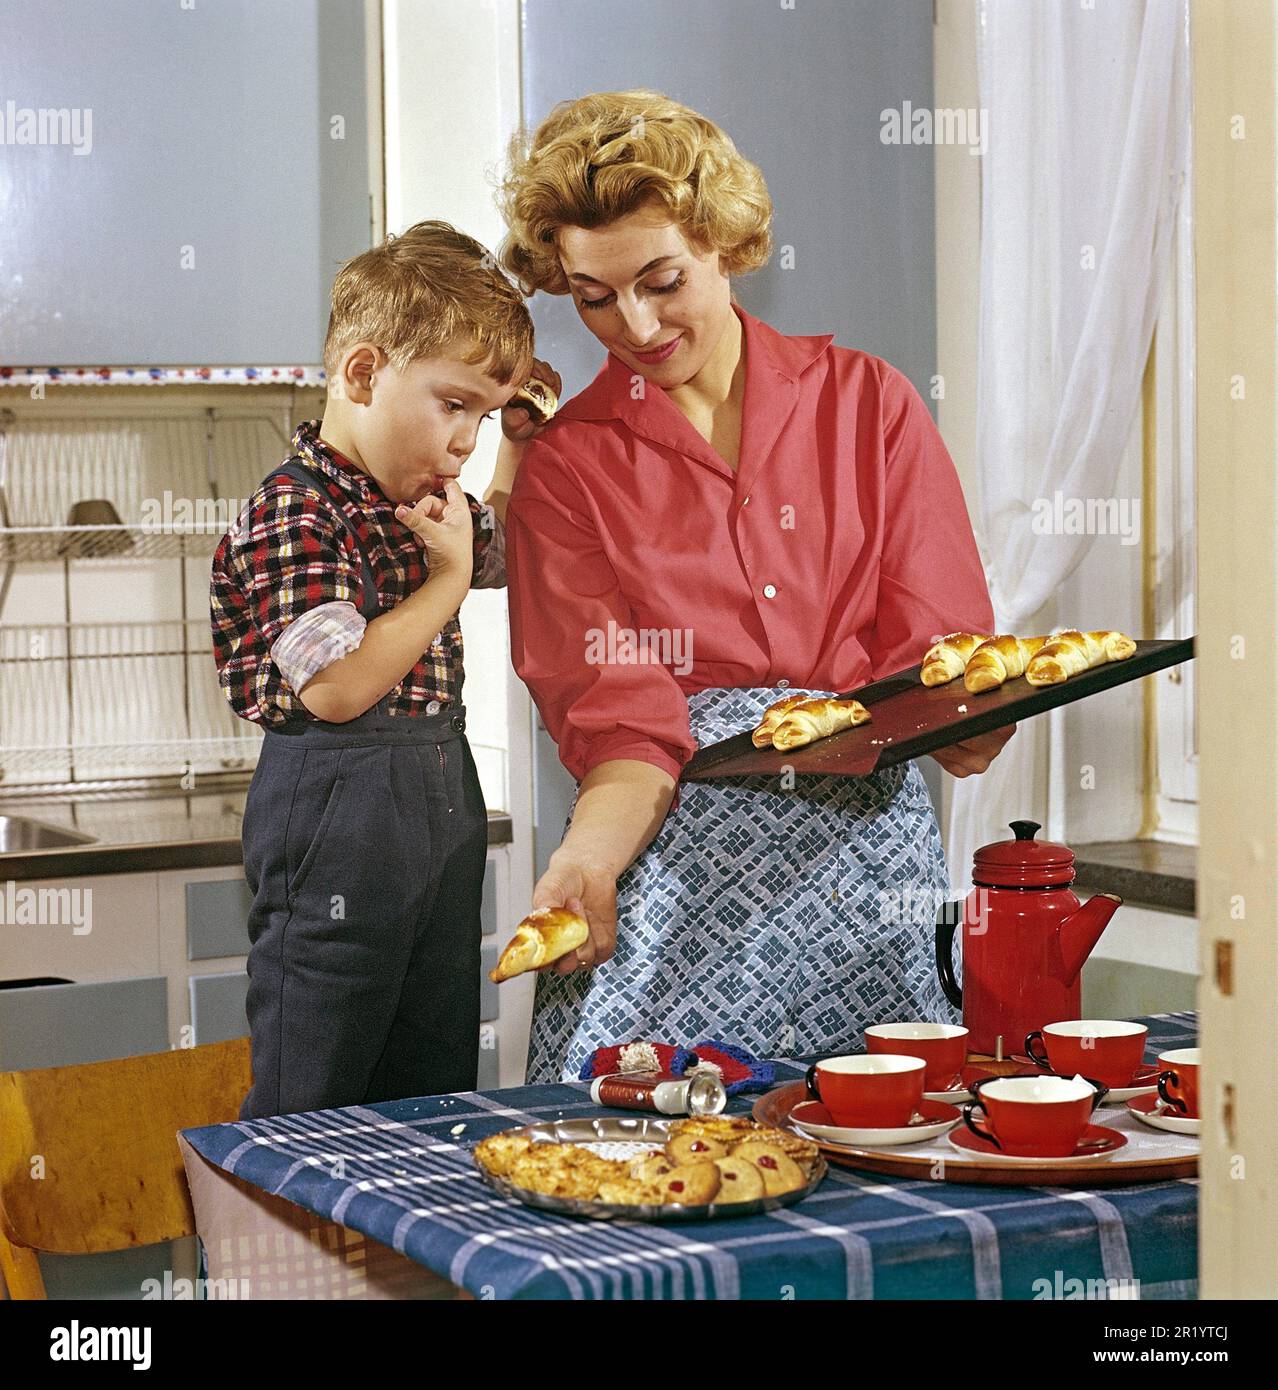 Cuisson dans le 1950s. Une mère avec son fils dans la cuisine. Elle a des petits pains et des gâteaux fraîchement cuits au four et le garçon semble comme s'il aimait l'odeur agréable d'eux. Une image typique de 1950s avec les vêtements de la mère, les tasses et la boîte, l'intérieur de la cuisine et les couleurs. Suède 1958 Conard Banque D'Images